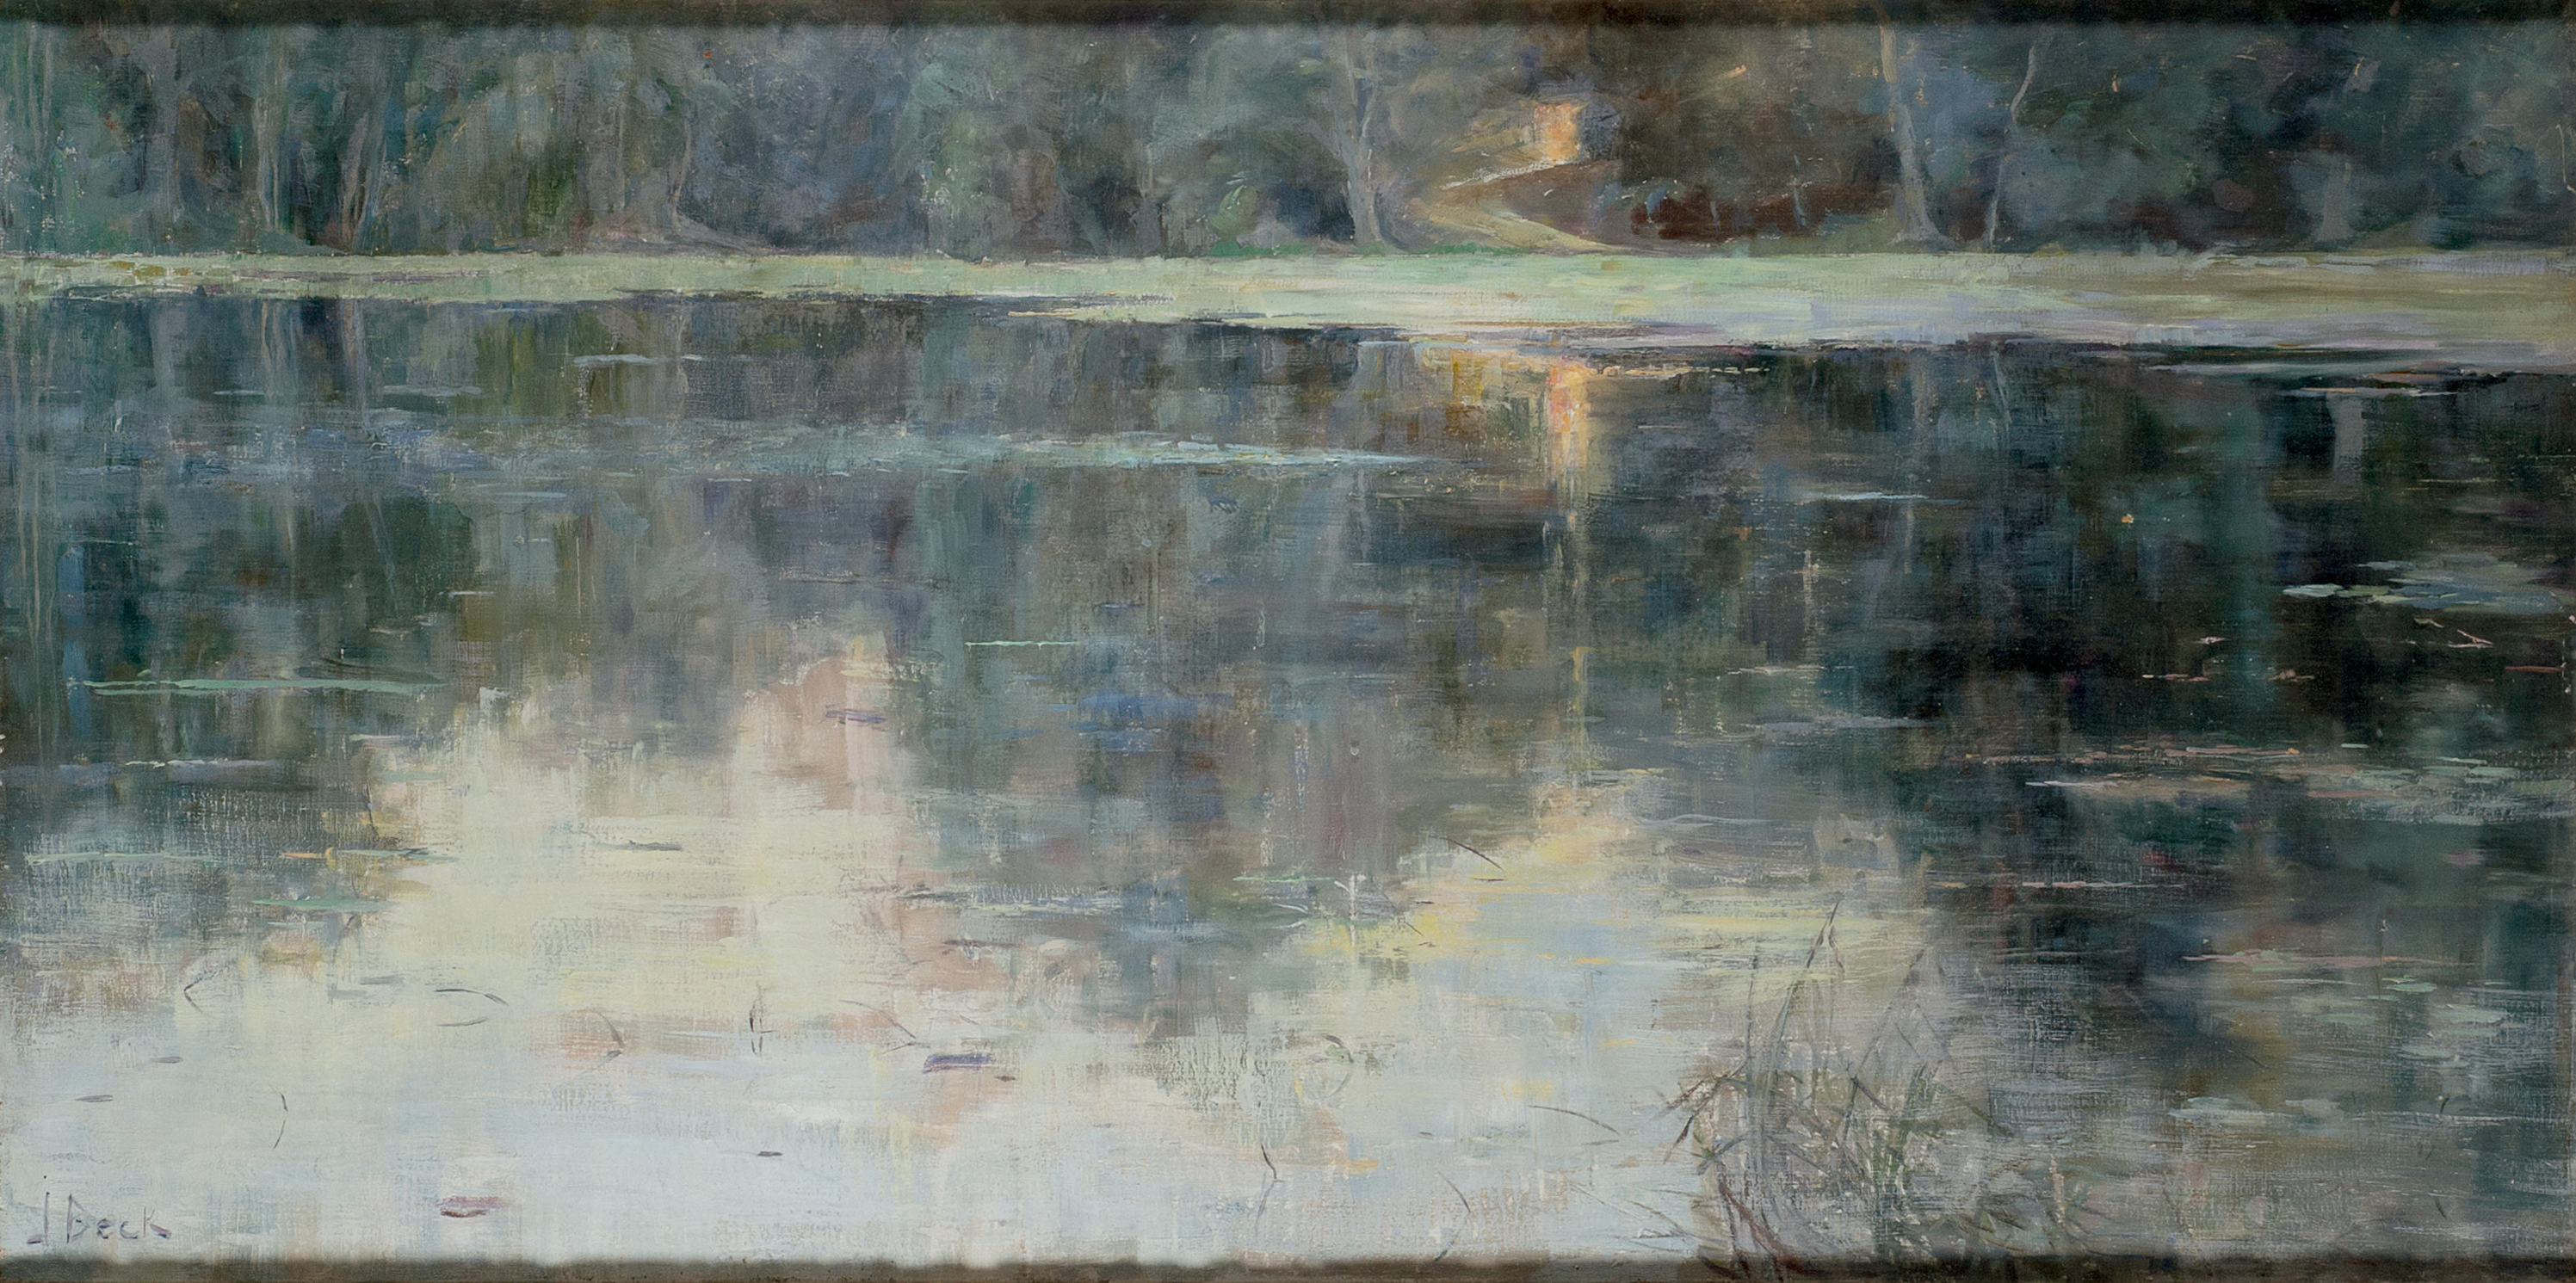 Последний луч солнца by Юлия Бек - 1888 - 50 x 100 cm 